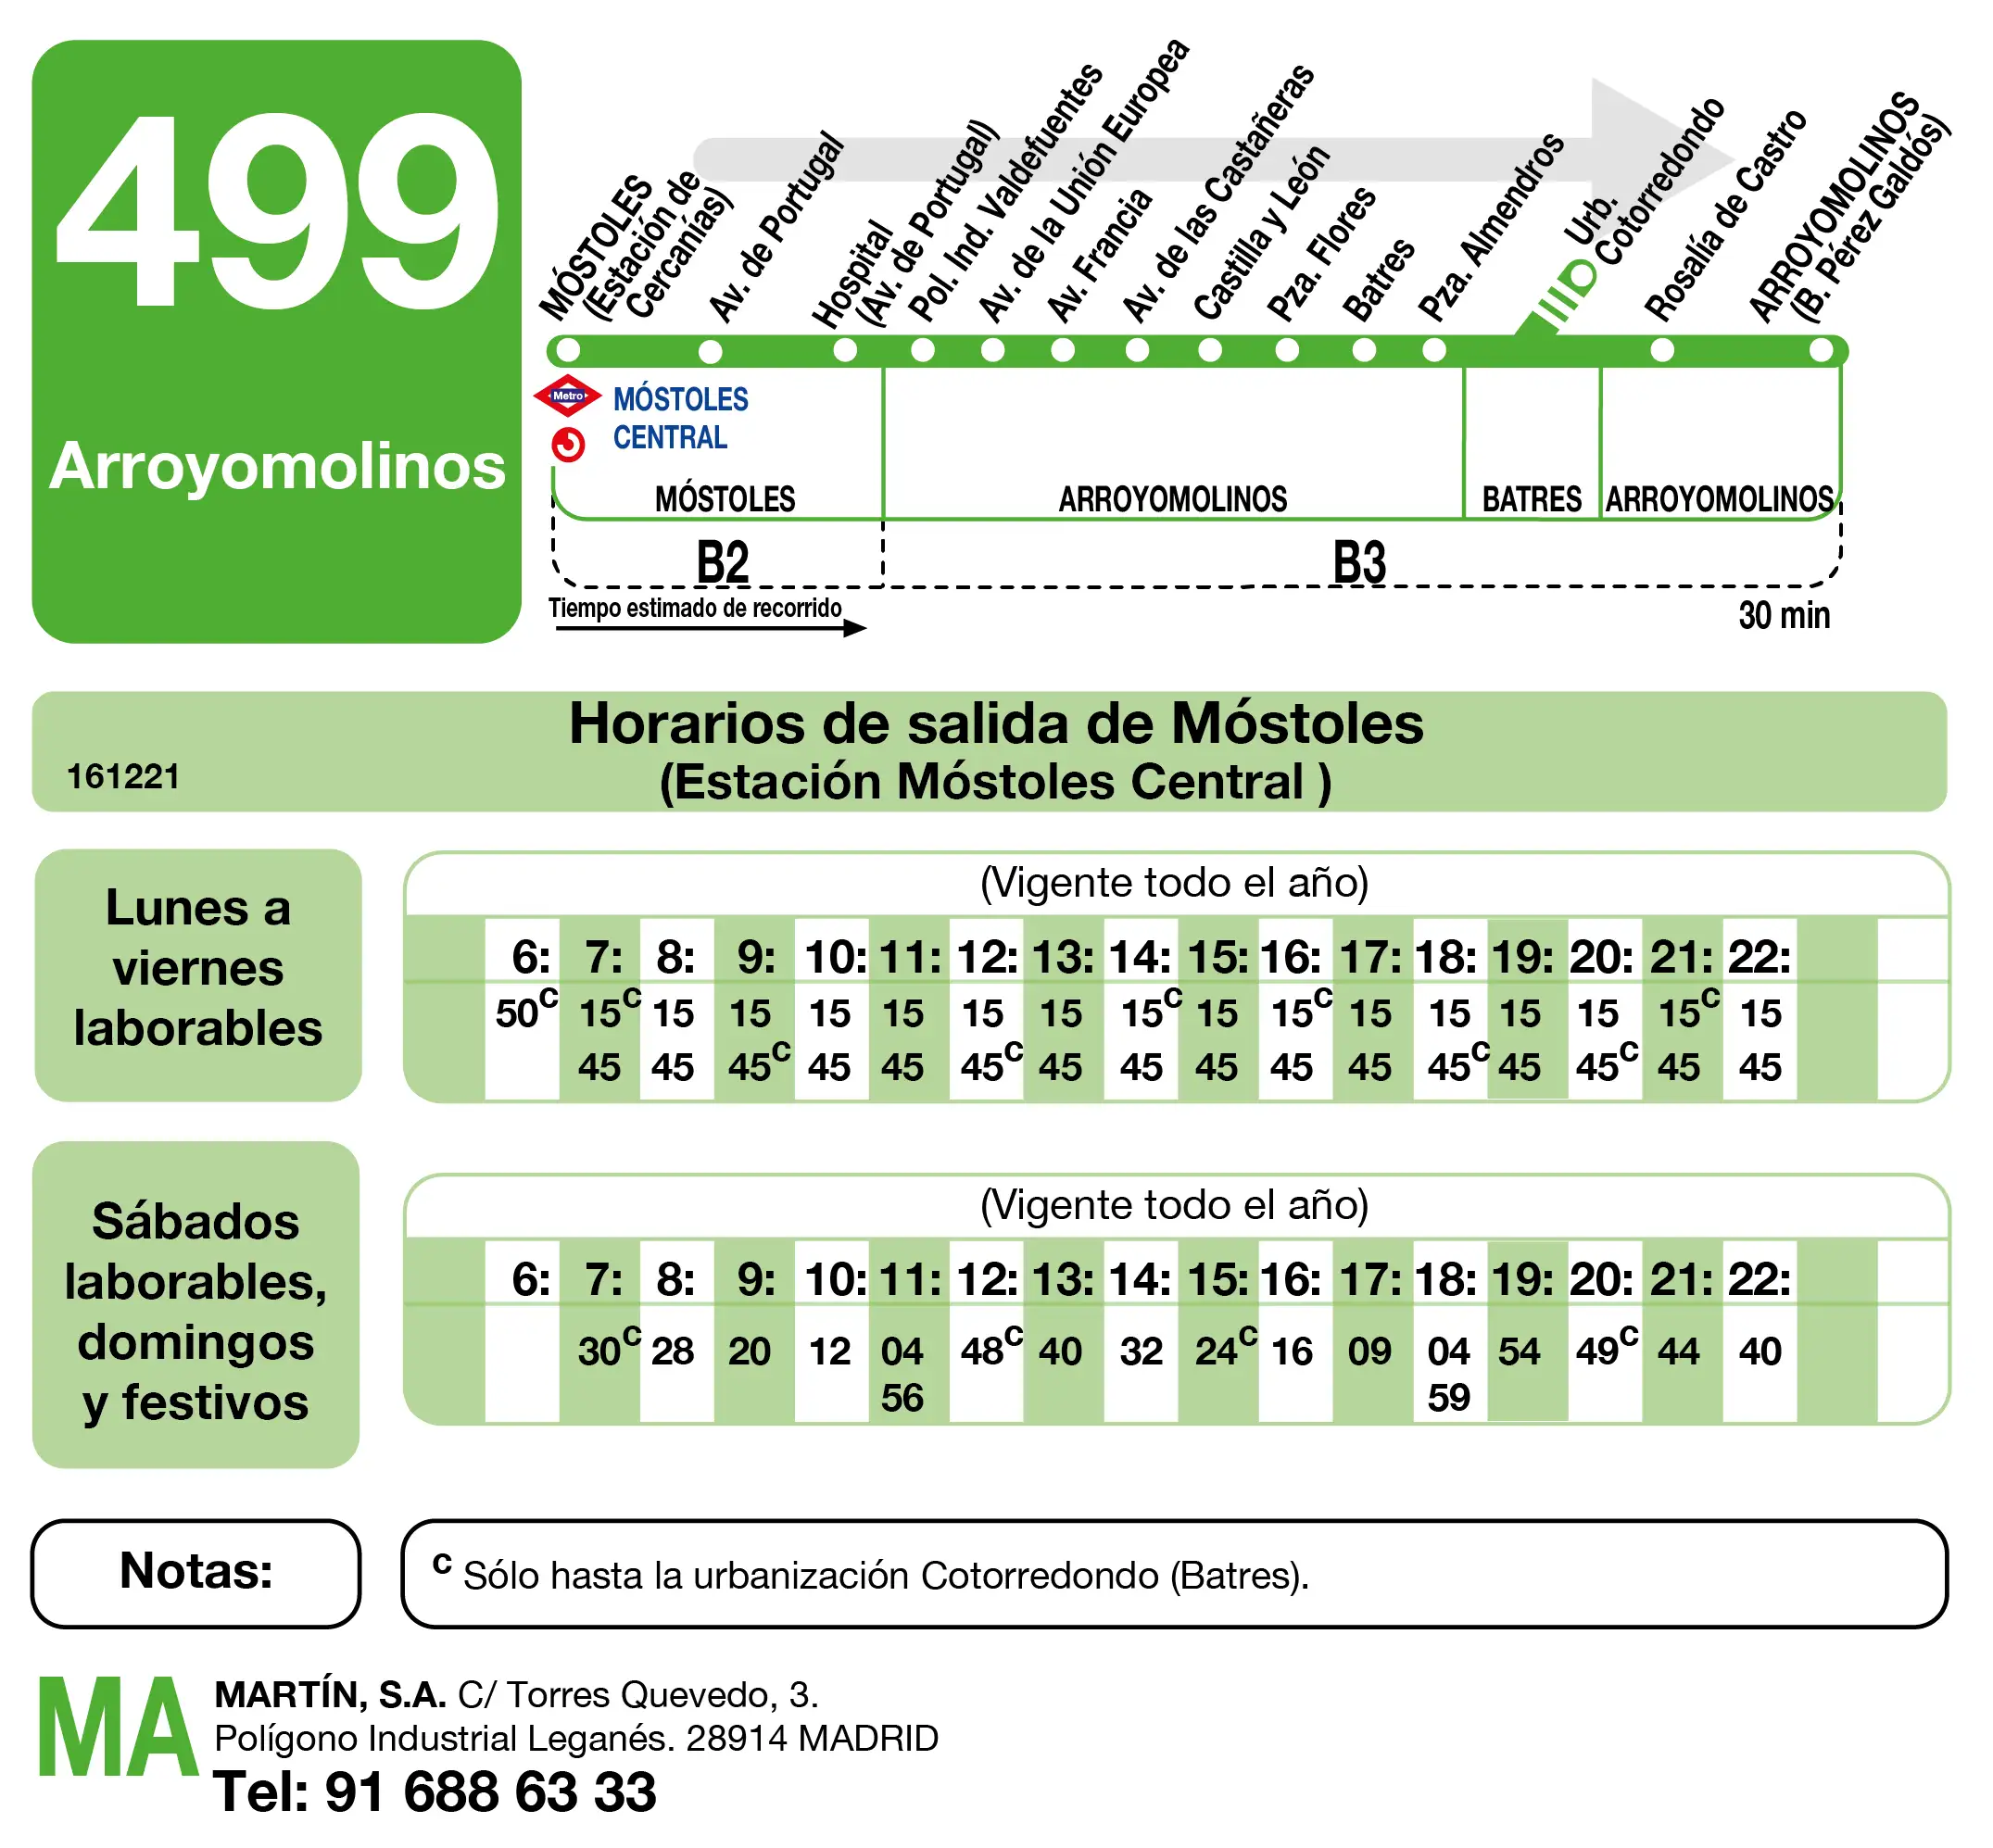 Tabla de horario para la ida de la línea 499 Móstoles – Arroyomolinos